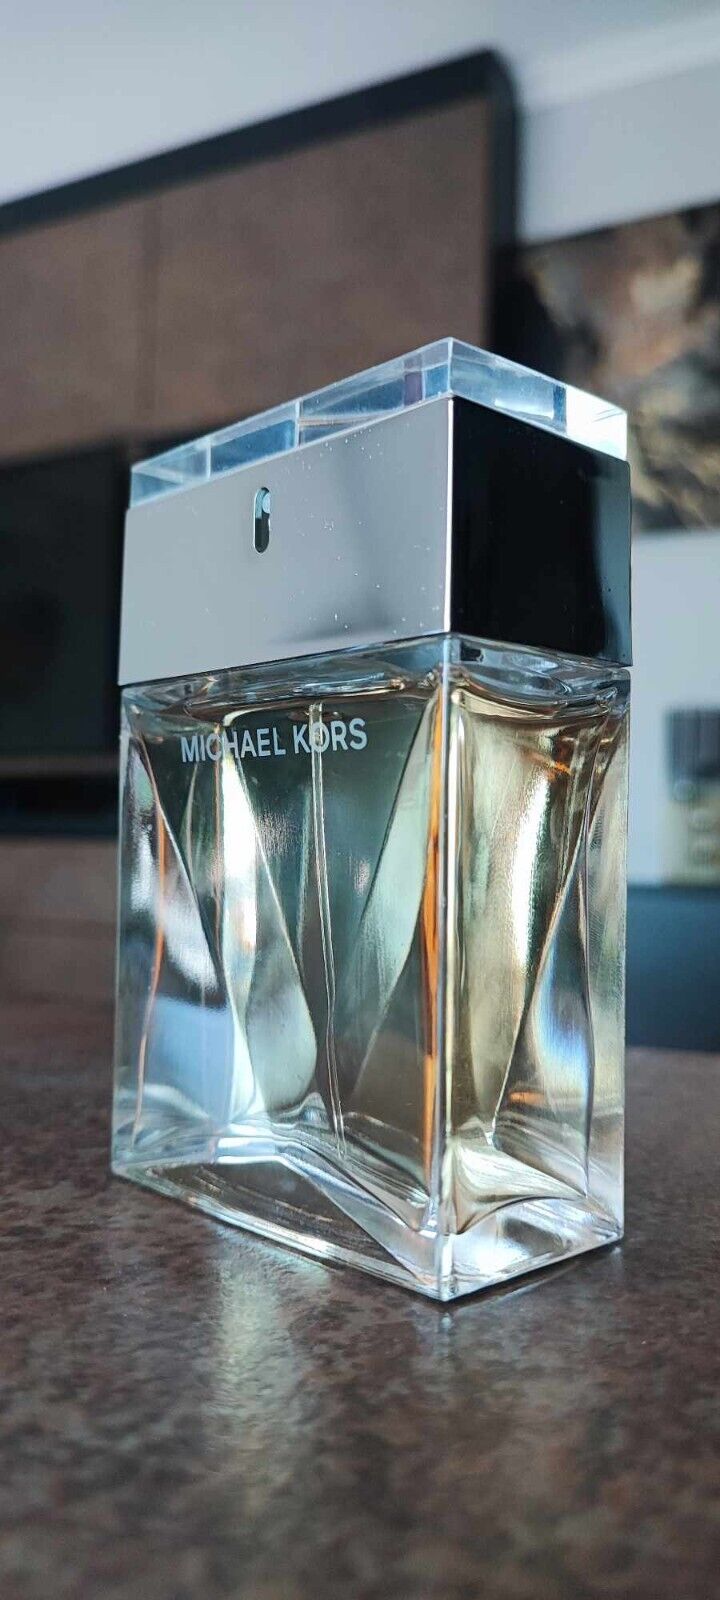 Michael Kors Collection Perfume by Michael Kors 3.4 Oz/100ml Eau De Parfum Spray